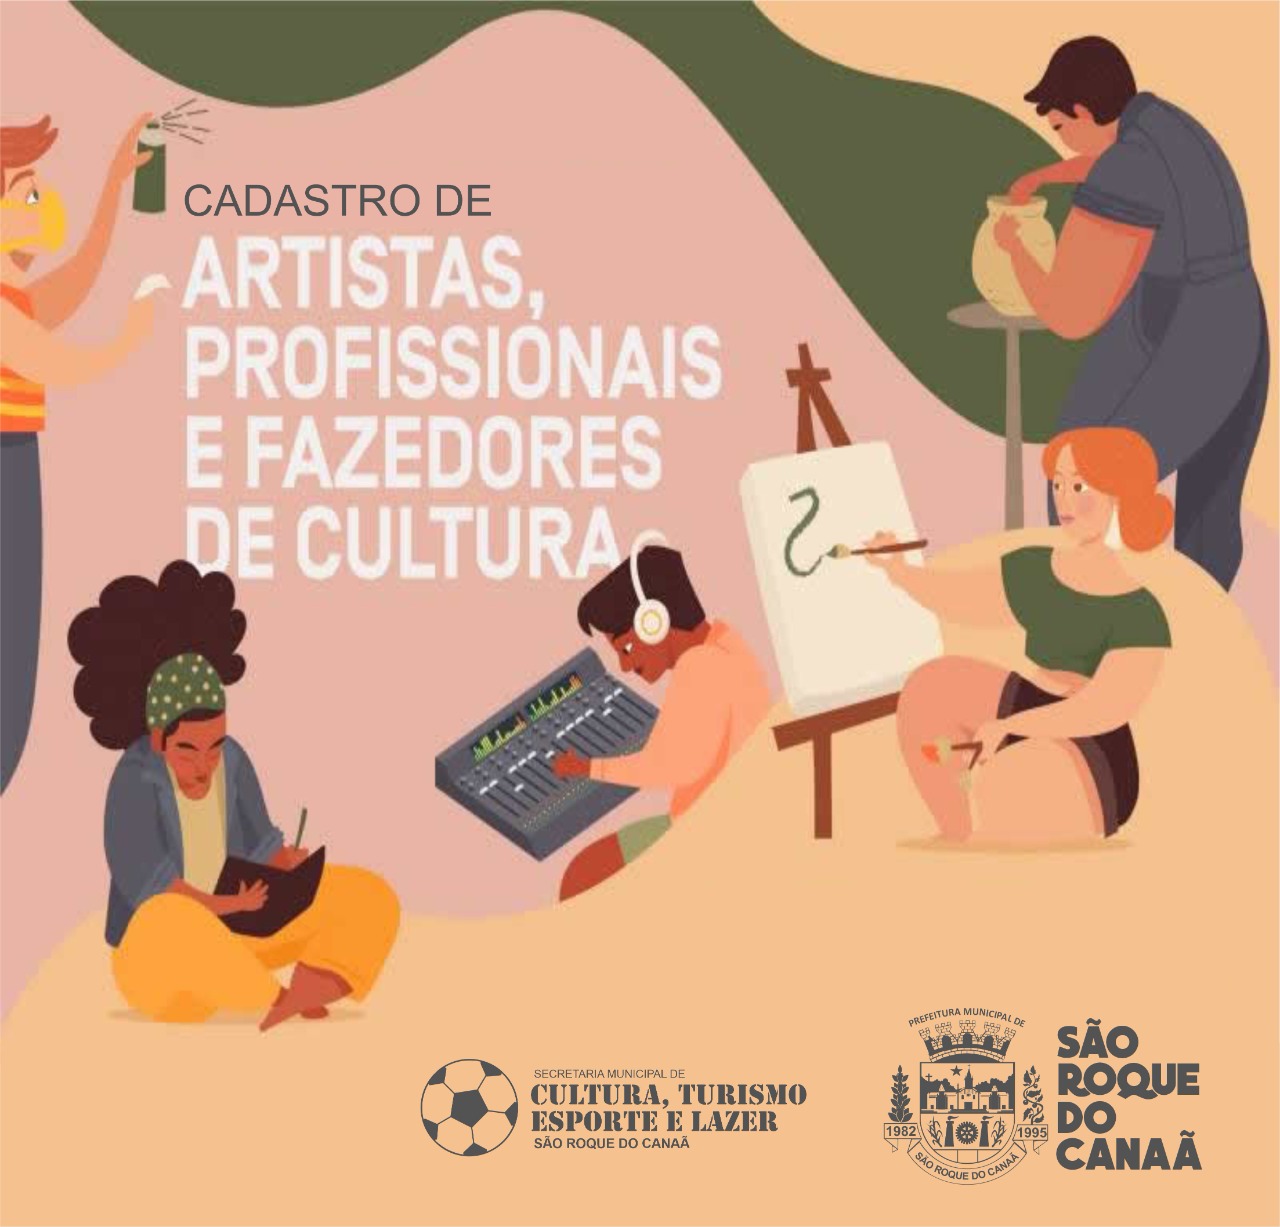 Secretaria de Turismo, Esporte e Lazer de São Roque do Canaã, lança cadastro dos “Fazedores de Cultura”.